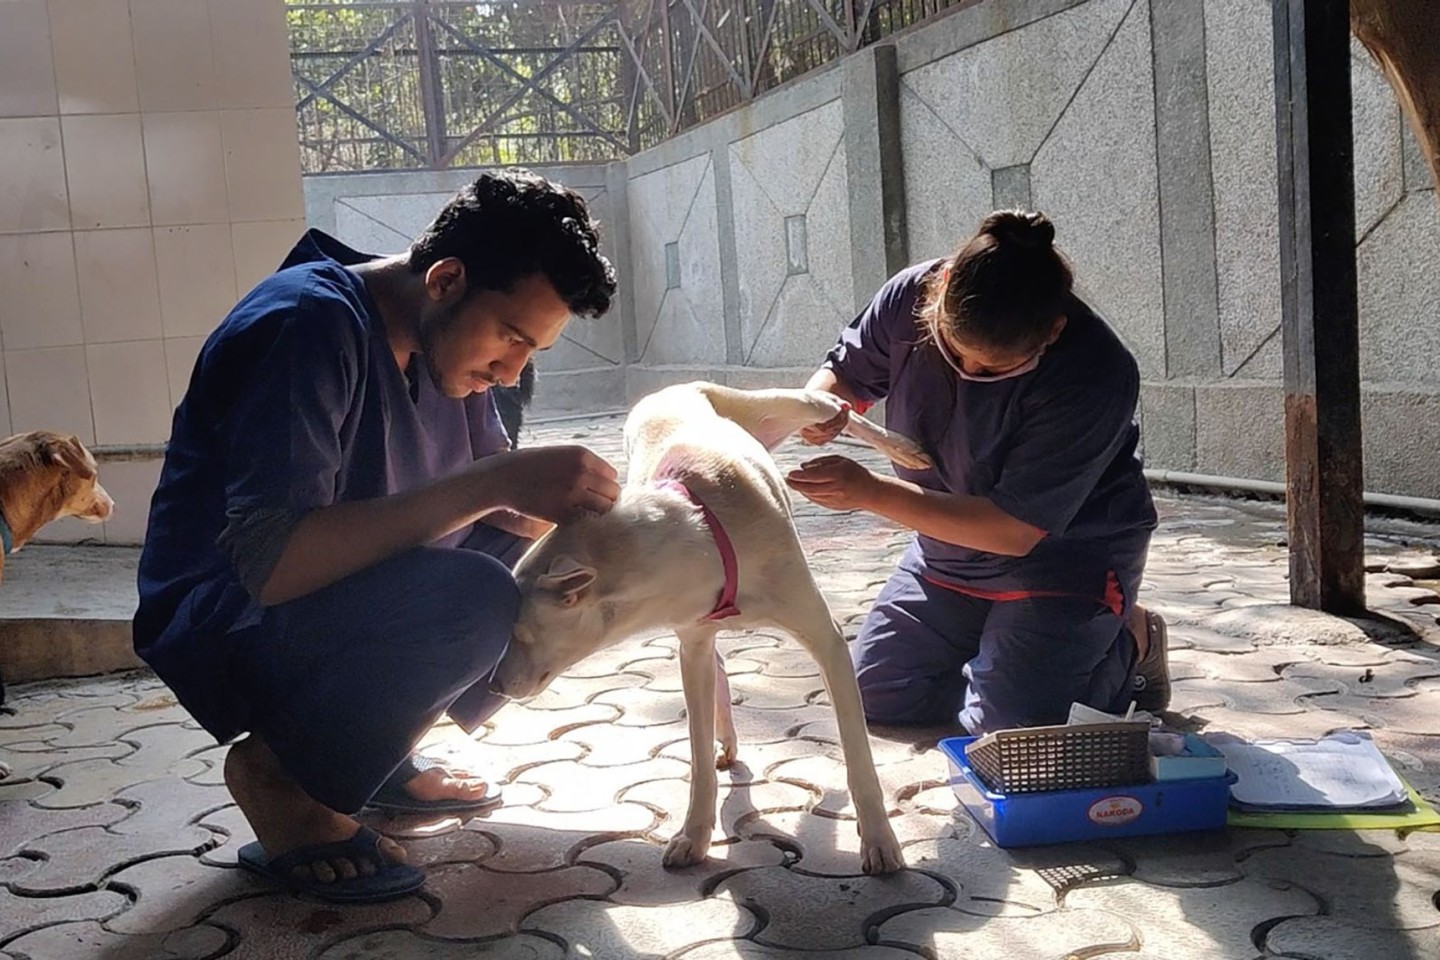 Hunde werden nach der Sterilisation im Zentrum für Geburtenkontrolle und Sterilisation postoperativ versorgt.